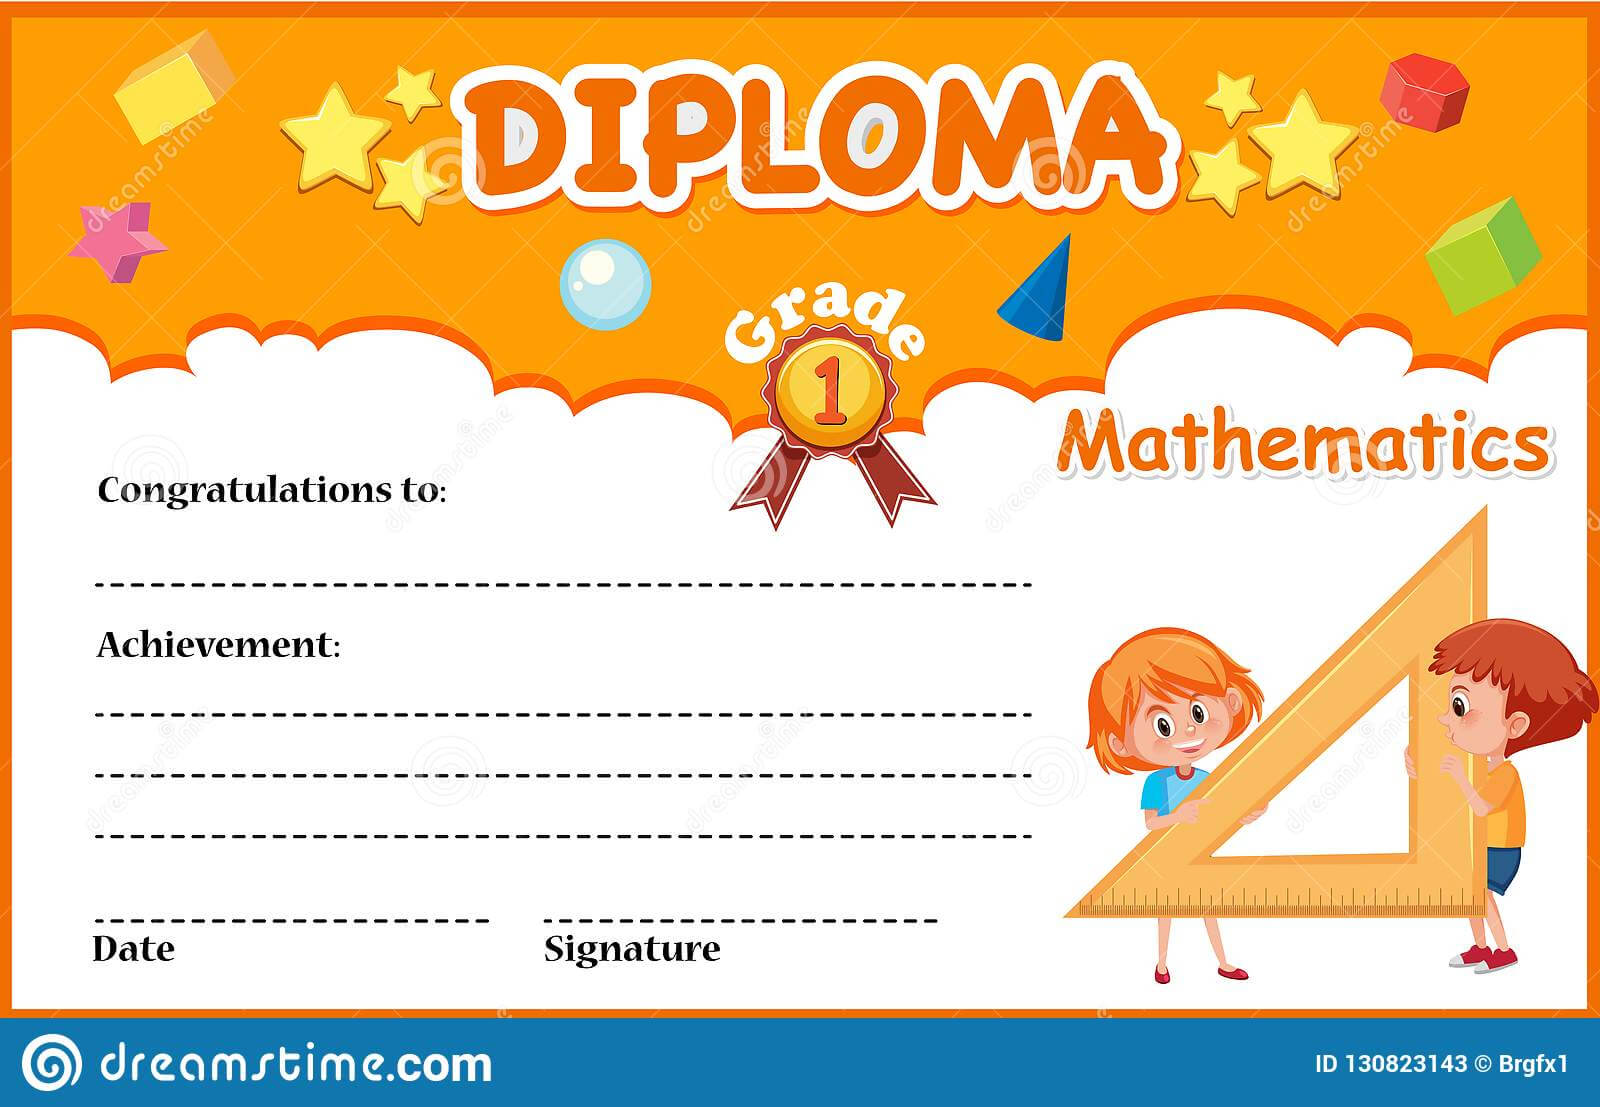 Mathematics Diploma Certificate Template Stock Vector Throughout Math Certificate Template